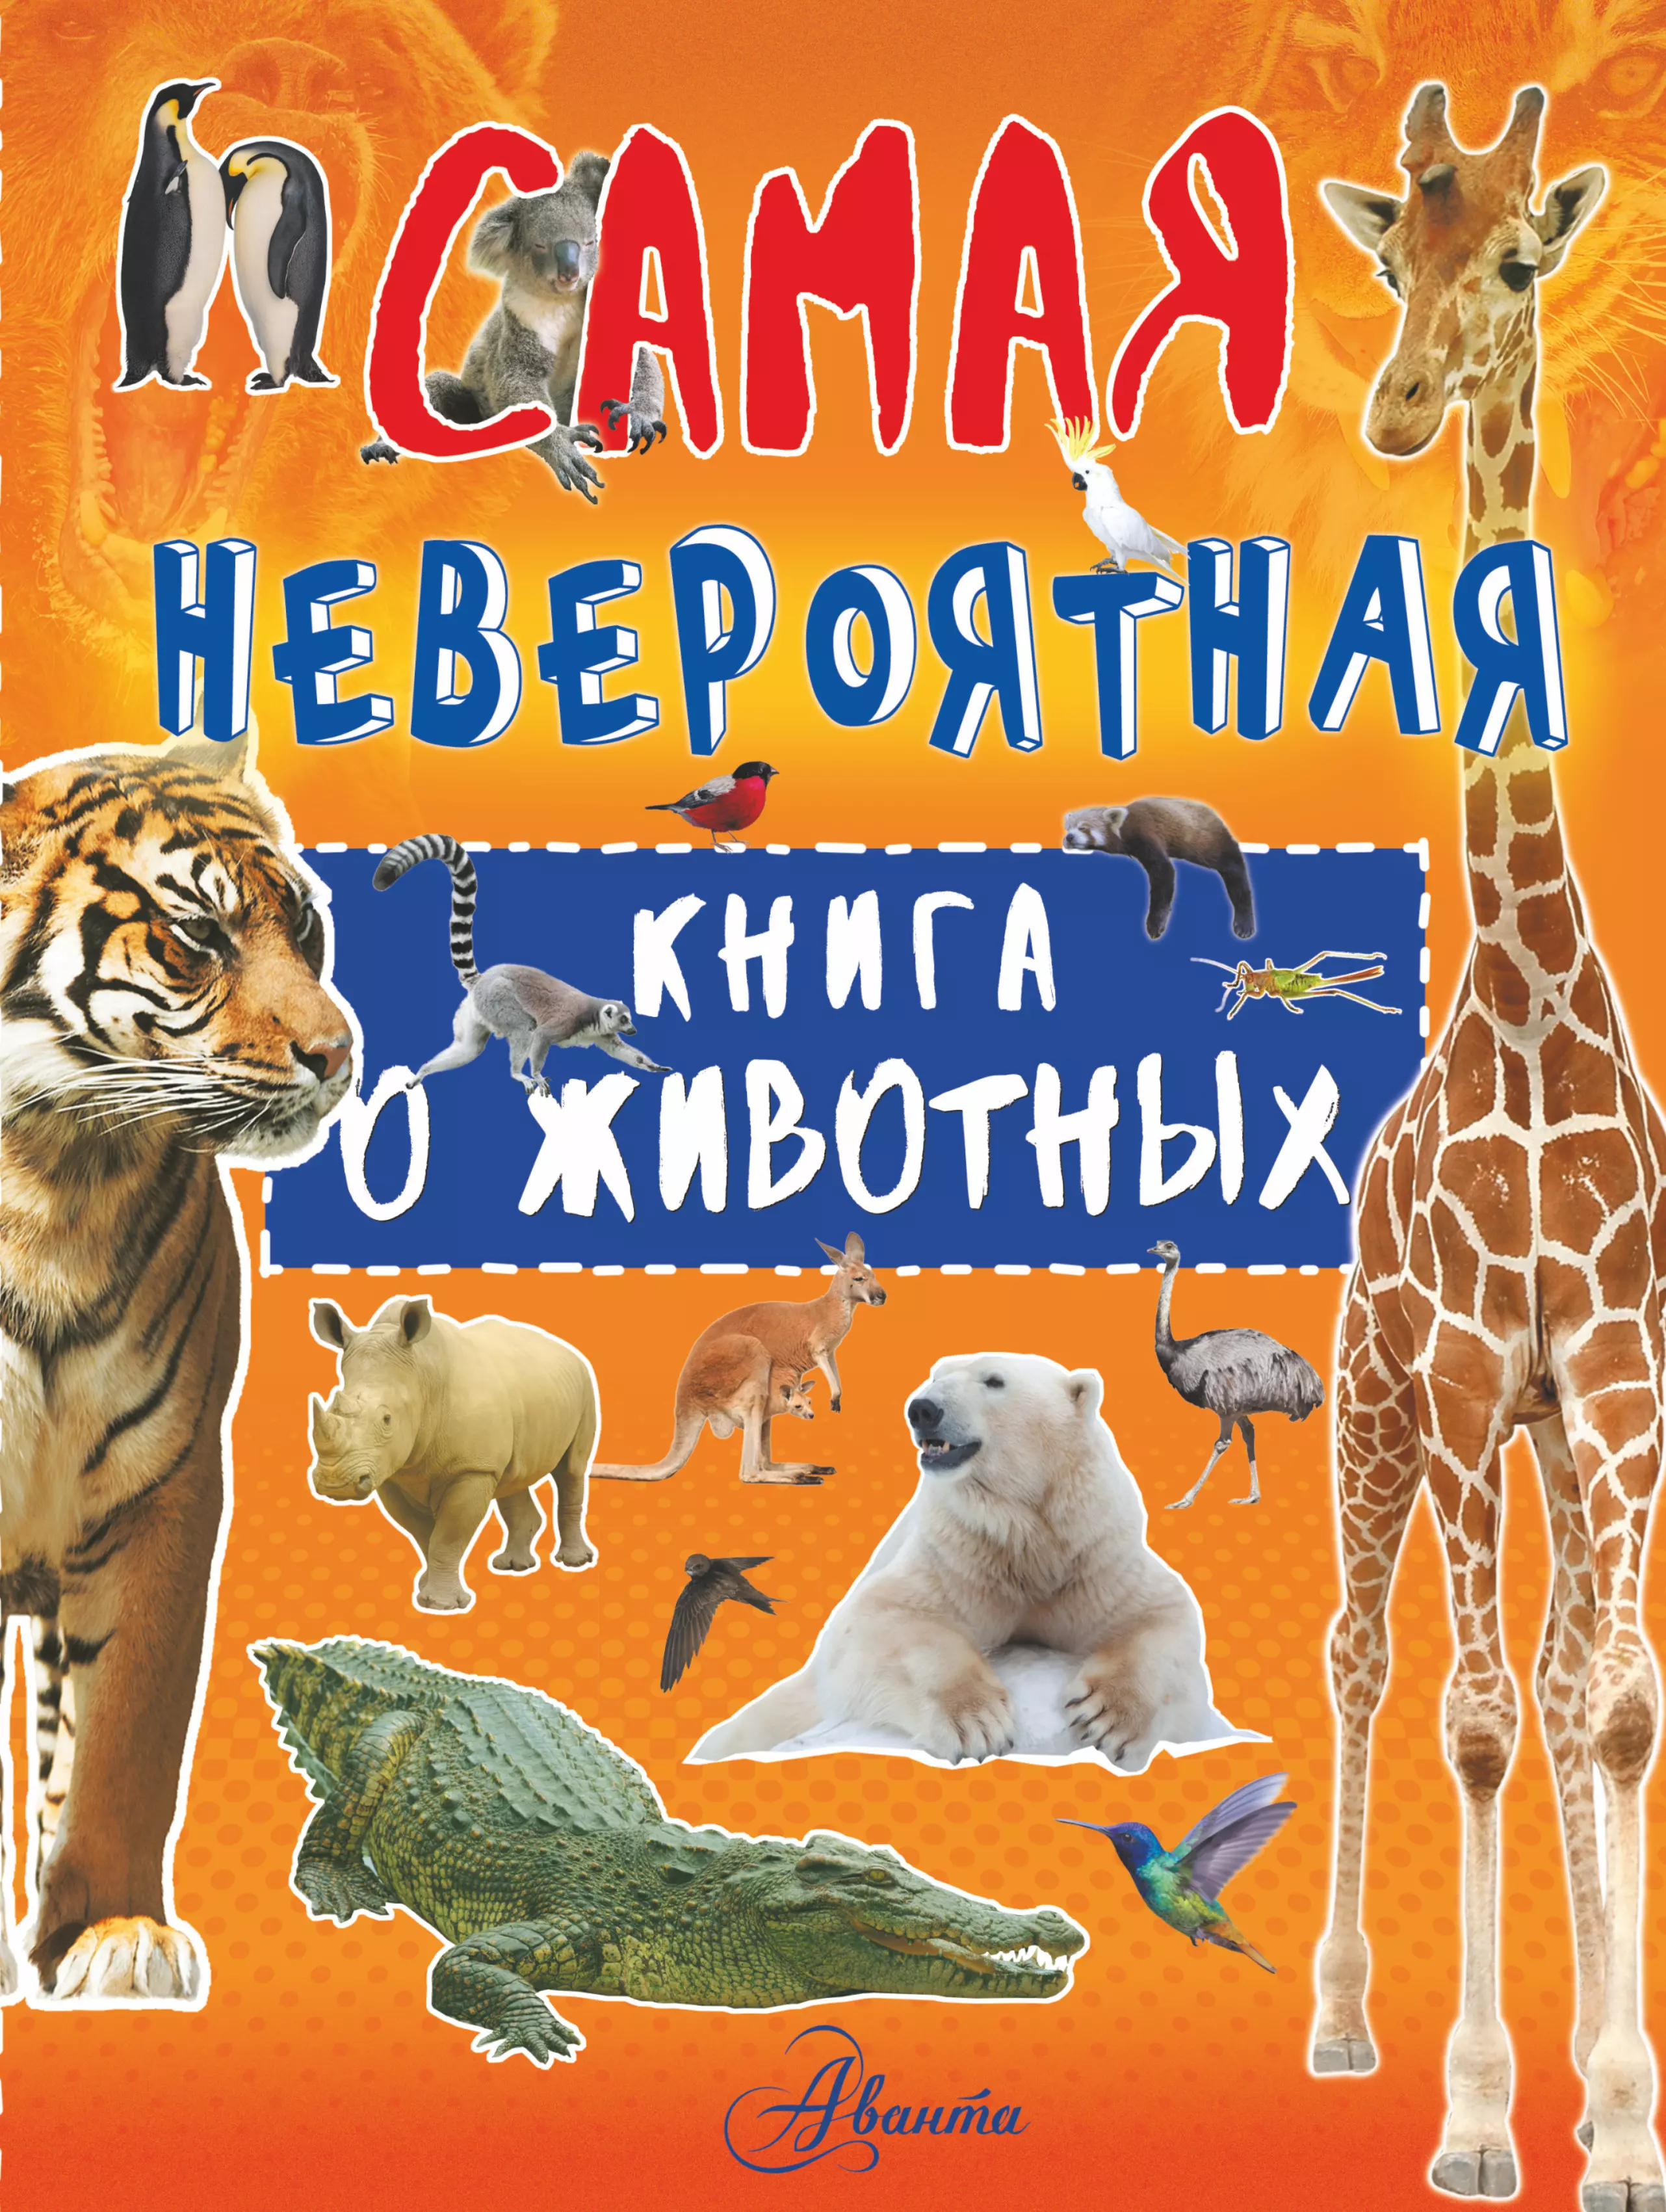 Вайткене Любовь Дмитриевна - Невероятная книга о животных